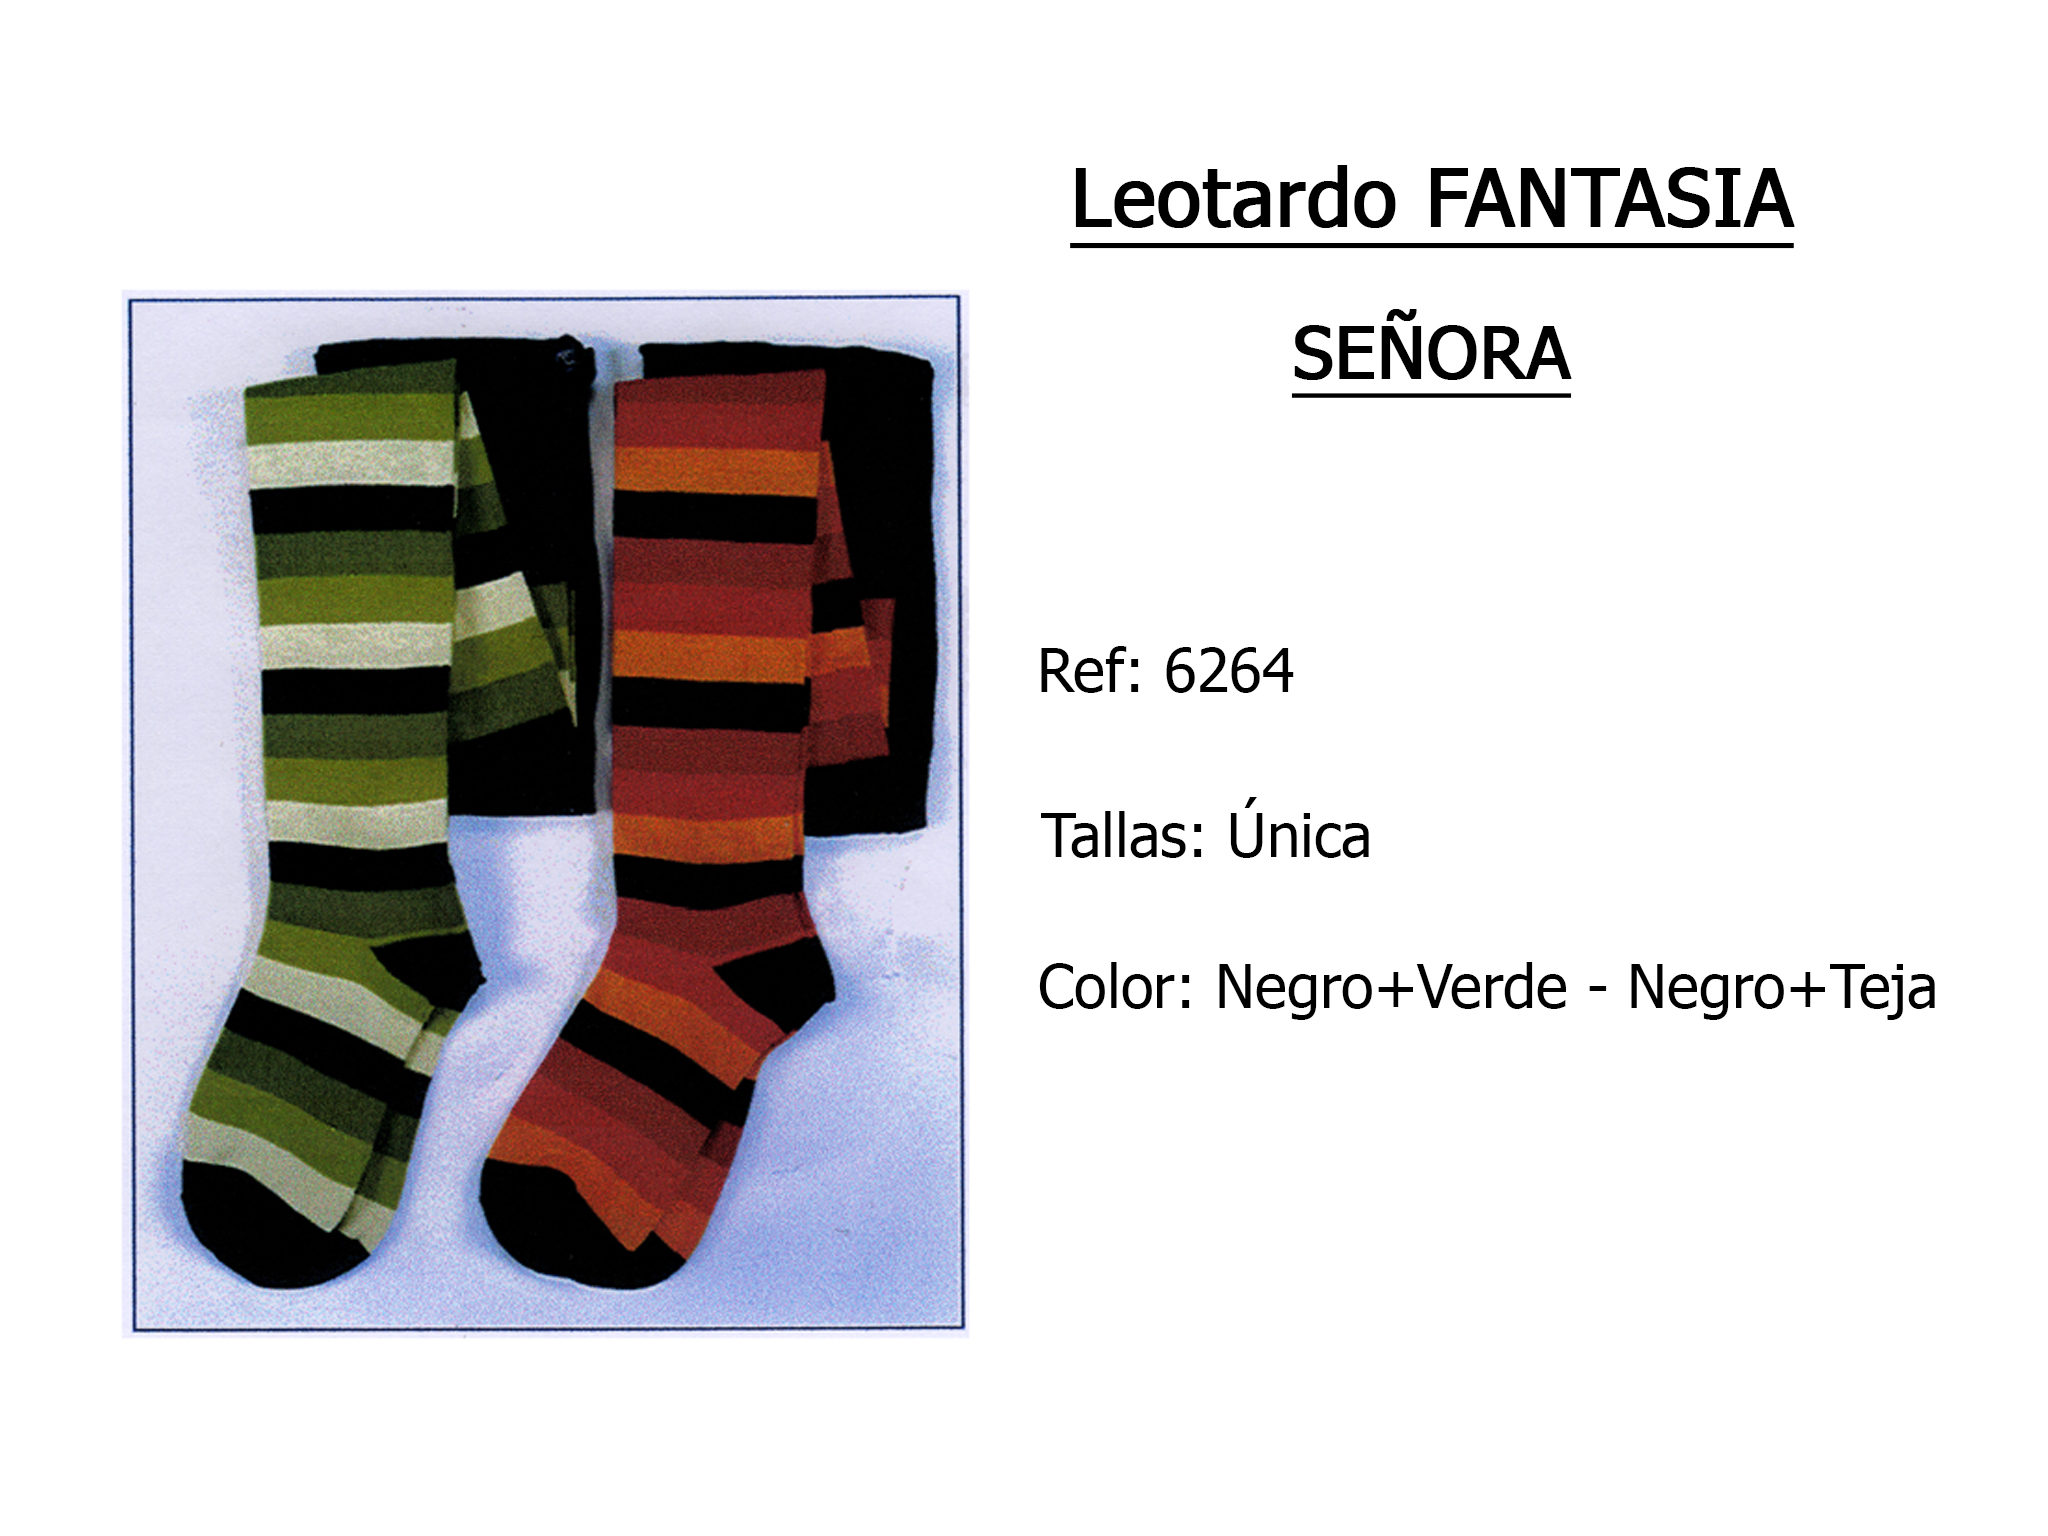 LEOTARDO fantasia senora 6264